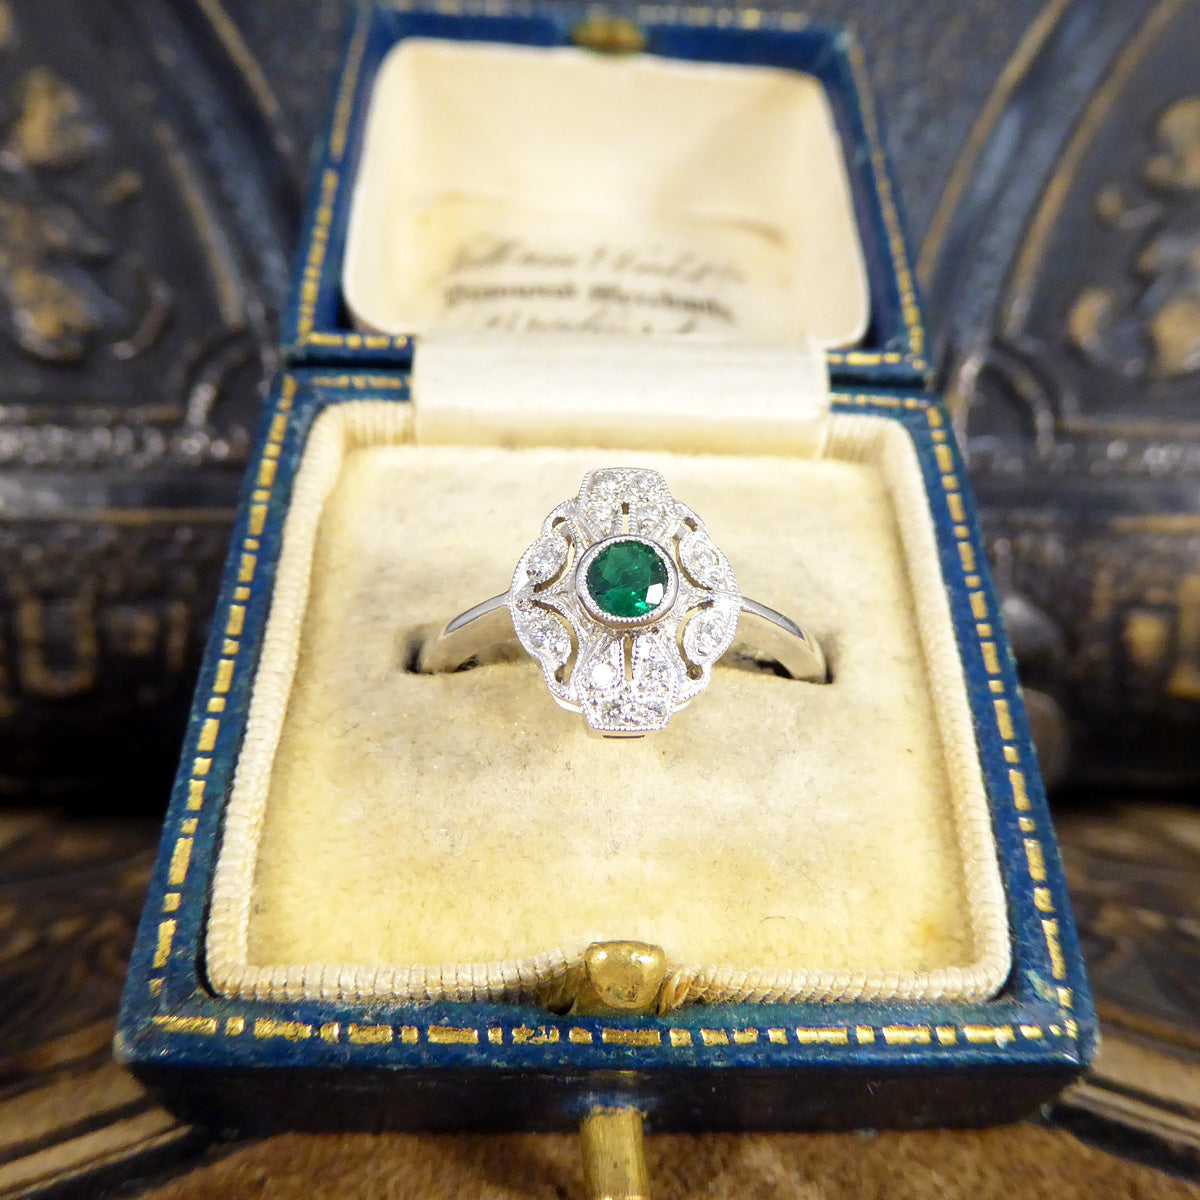 Premium Period Art Deco Replica Emerald and Diamond Plaque Ring in 18ct White Gold